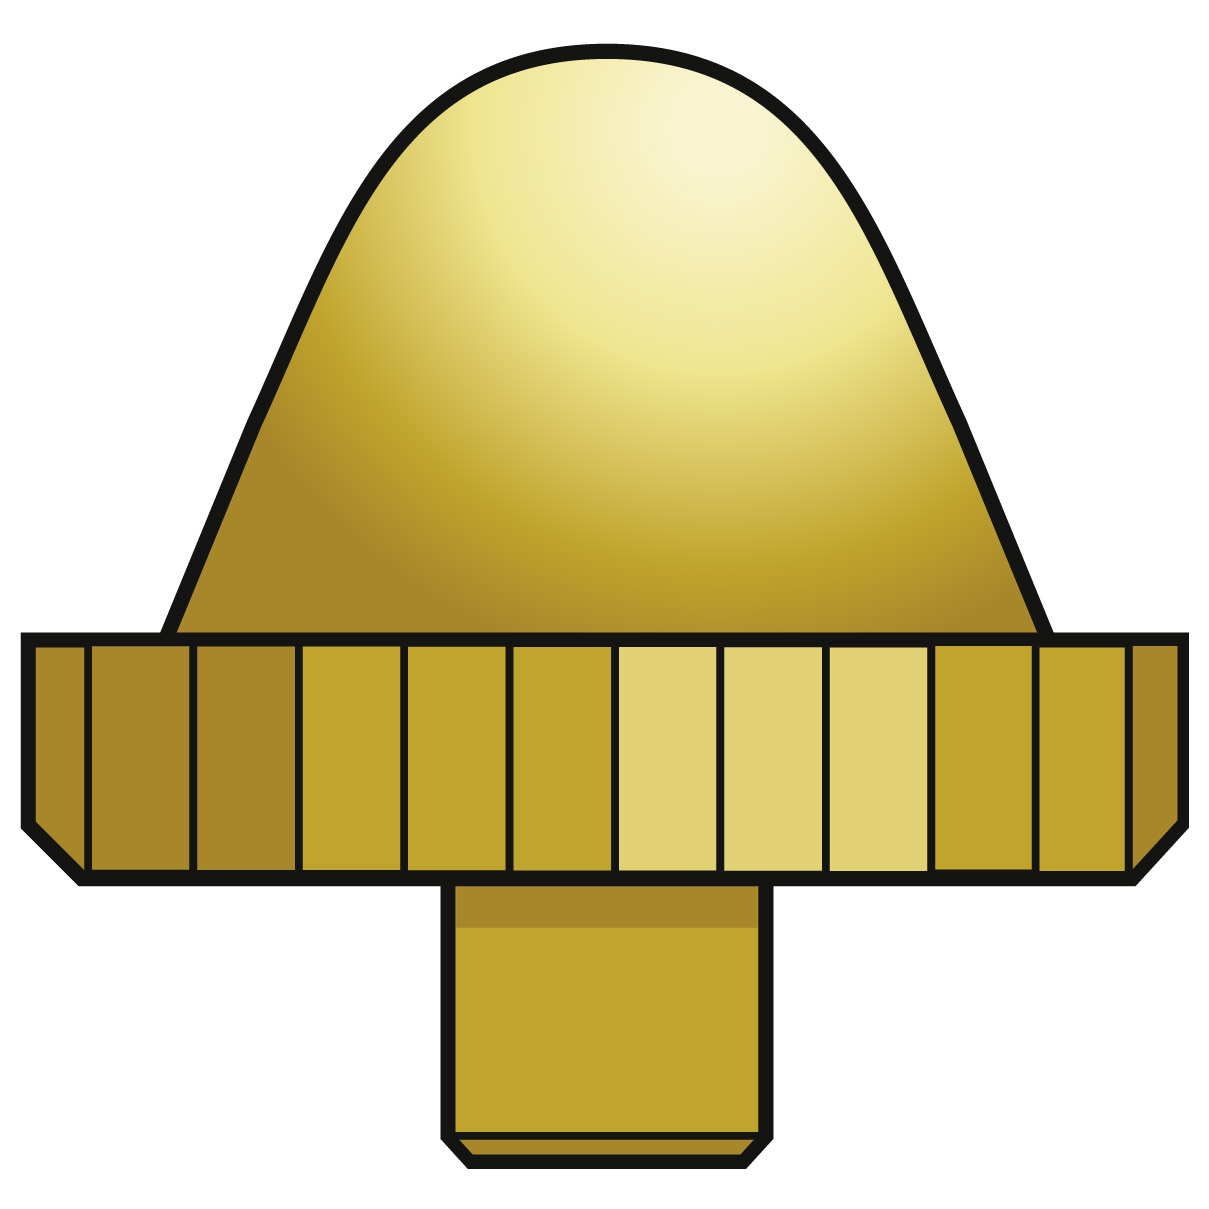 Einfache Krone 916 ZH, 1 Micron gelb, Rohr kurz, Ø 4,5, Gewinde 0,90, nicht wasserdicht